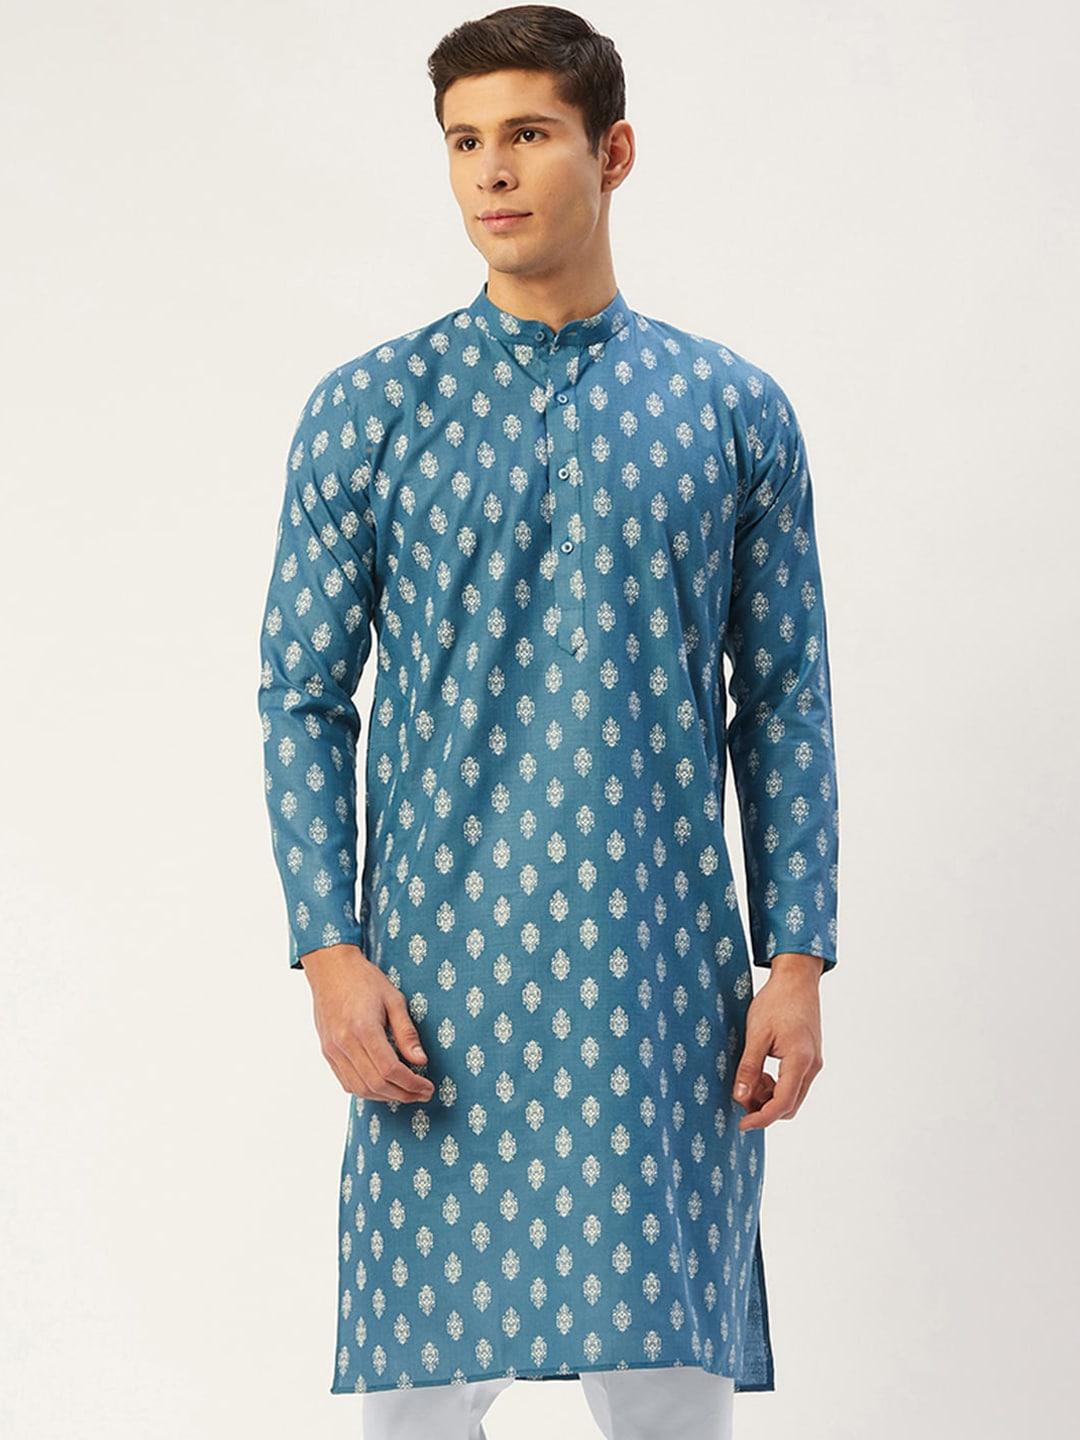 jompers men teal blue & white ethnic motifs kurta